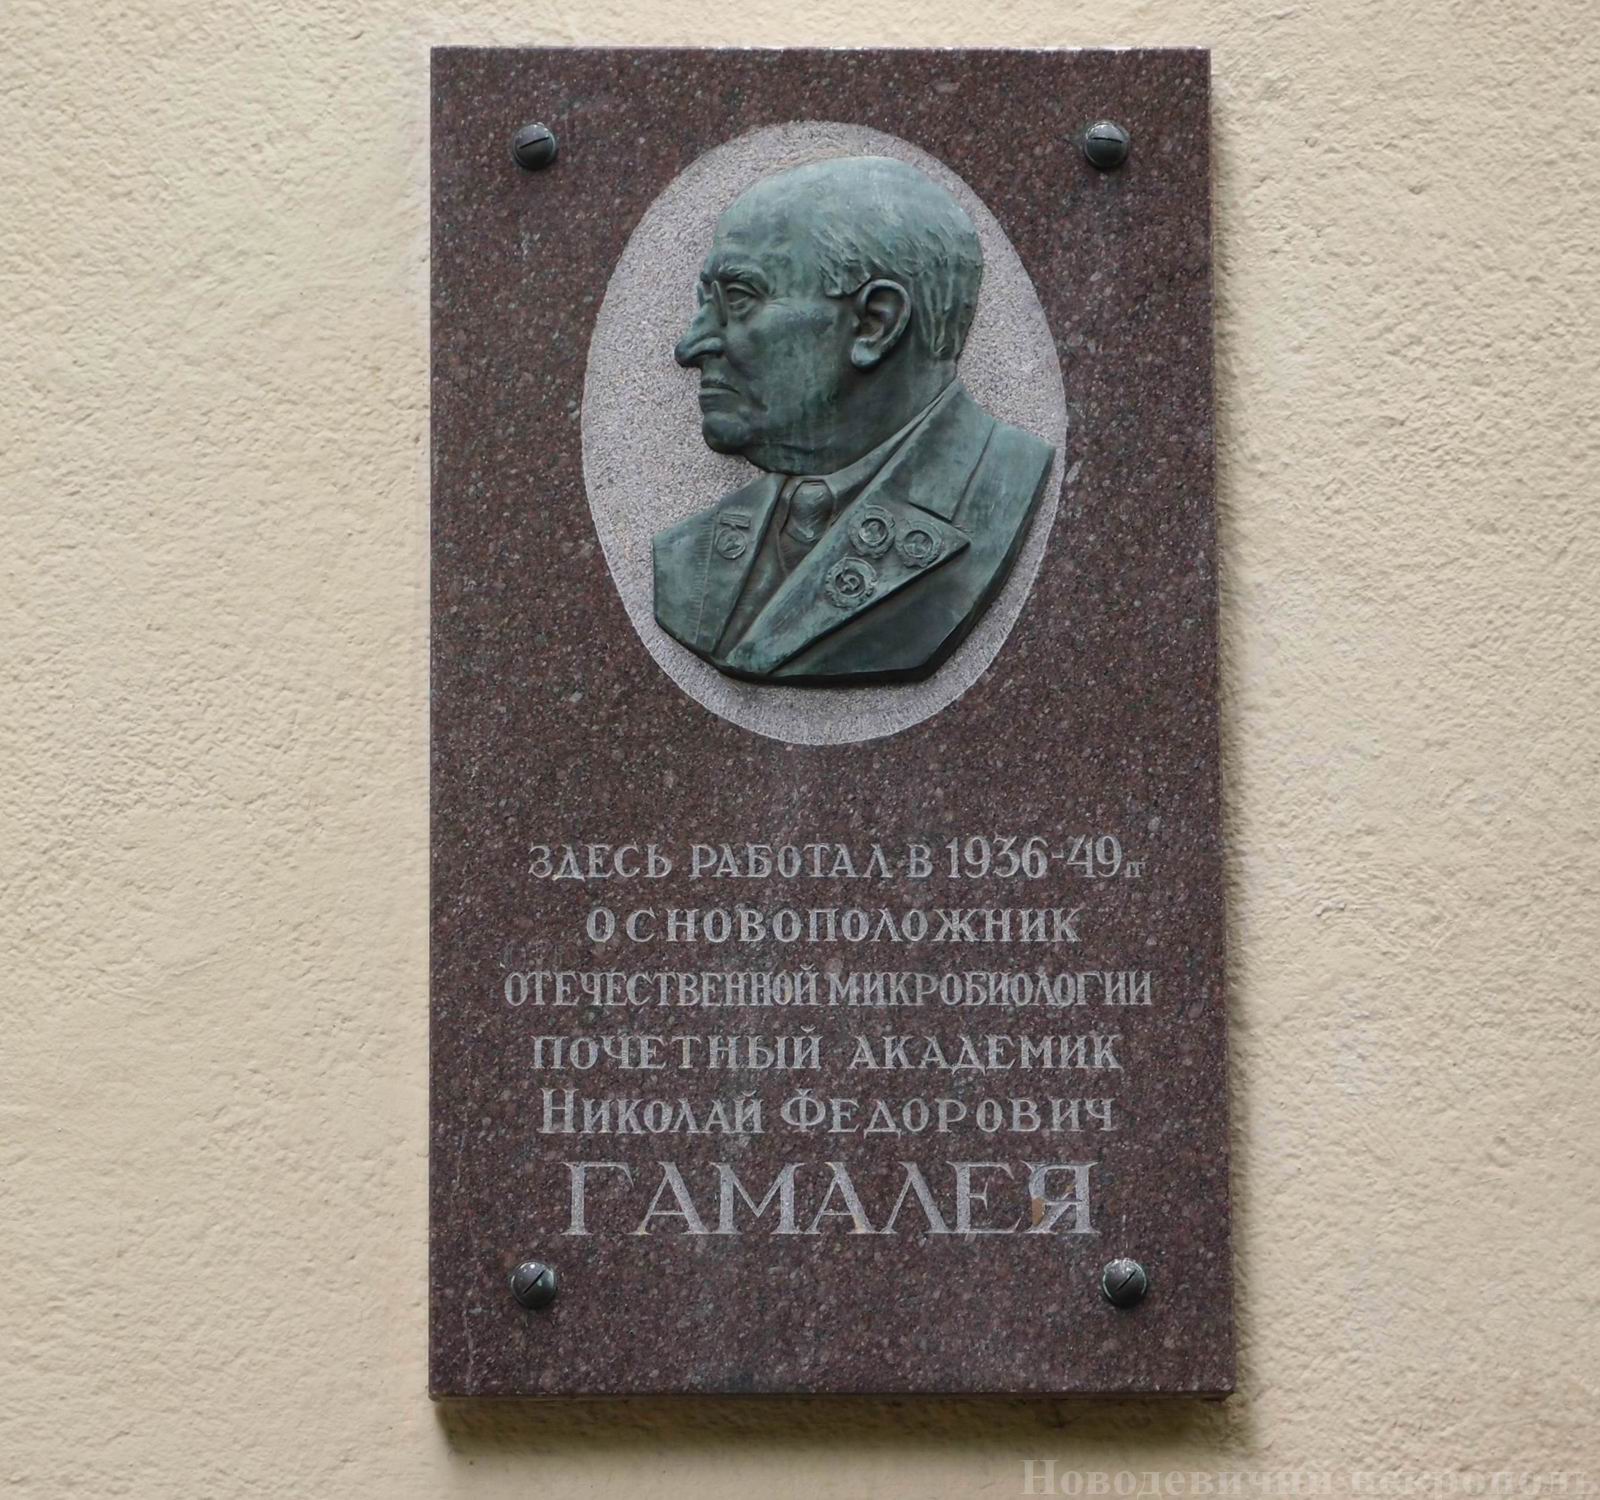 Гамалея Николай Фёдорович (1859-1949)